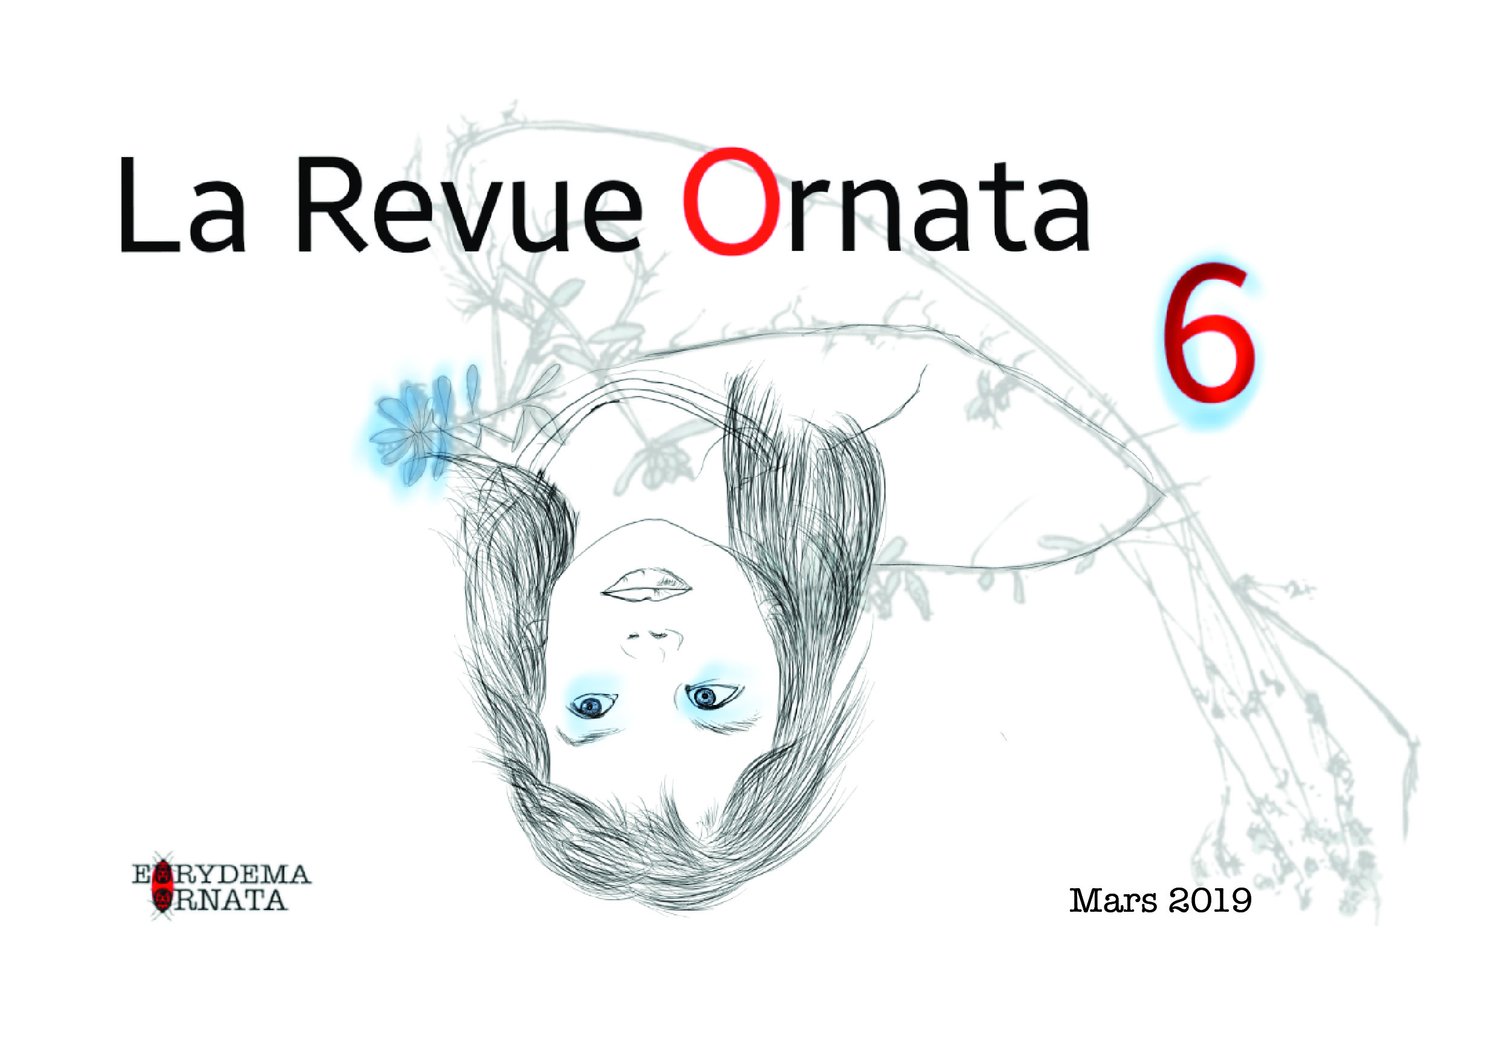 Ornata n°6, Revue de 68 pages éditée à 150 exemplaires numérotés, 14.8x21cm, Eurydema Ornata Editions, 2019